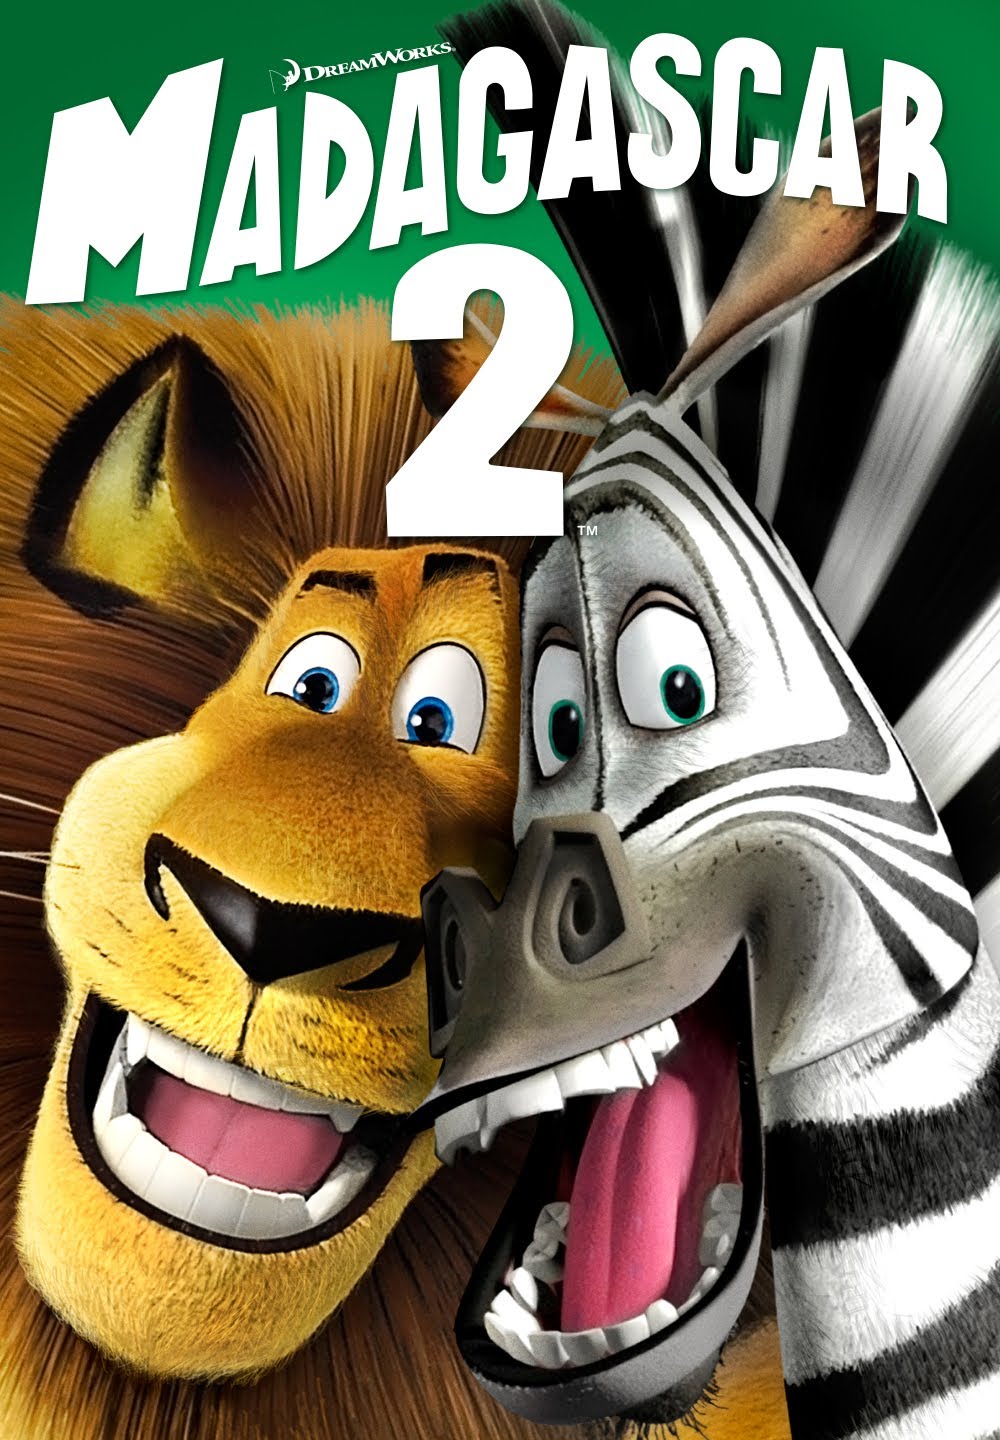 Madagascar 2 [HD] (2008)